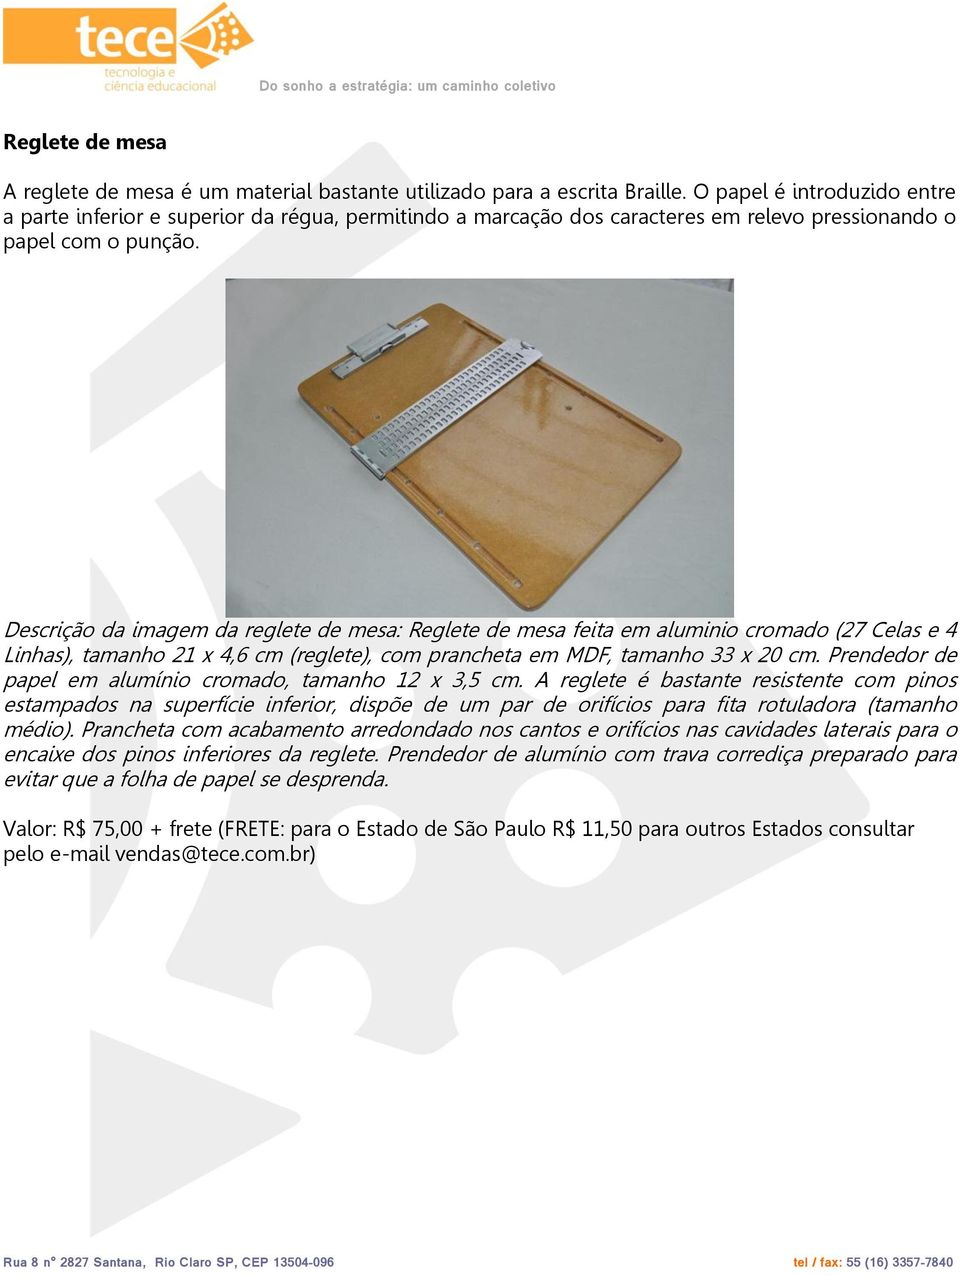 Descrição da imagem da reglete de mesa: Reglete de mesa feita em aluminio cromado (27 Celas e 4 Linhas), tamanho 21 x 4,6 cm (reglete), com prancheta em MDF, tamanho 33 x 20 cm.